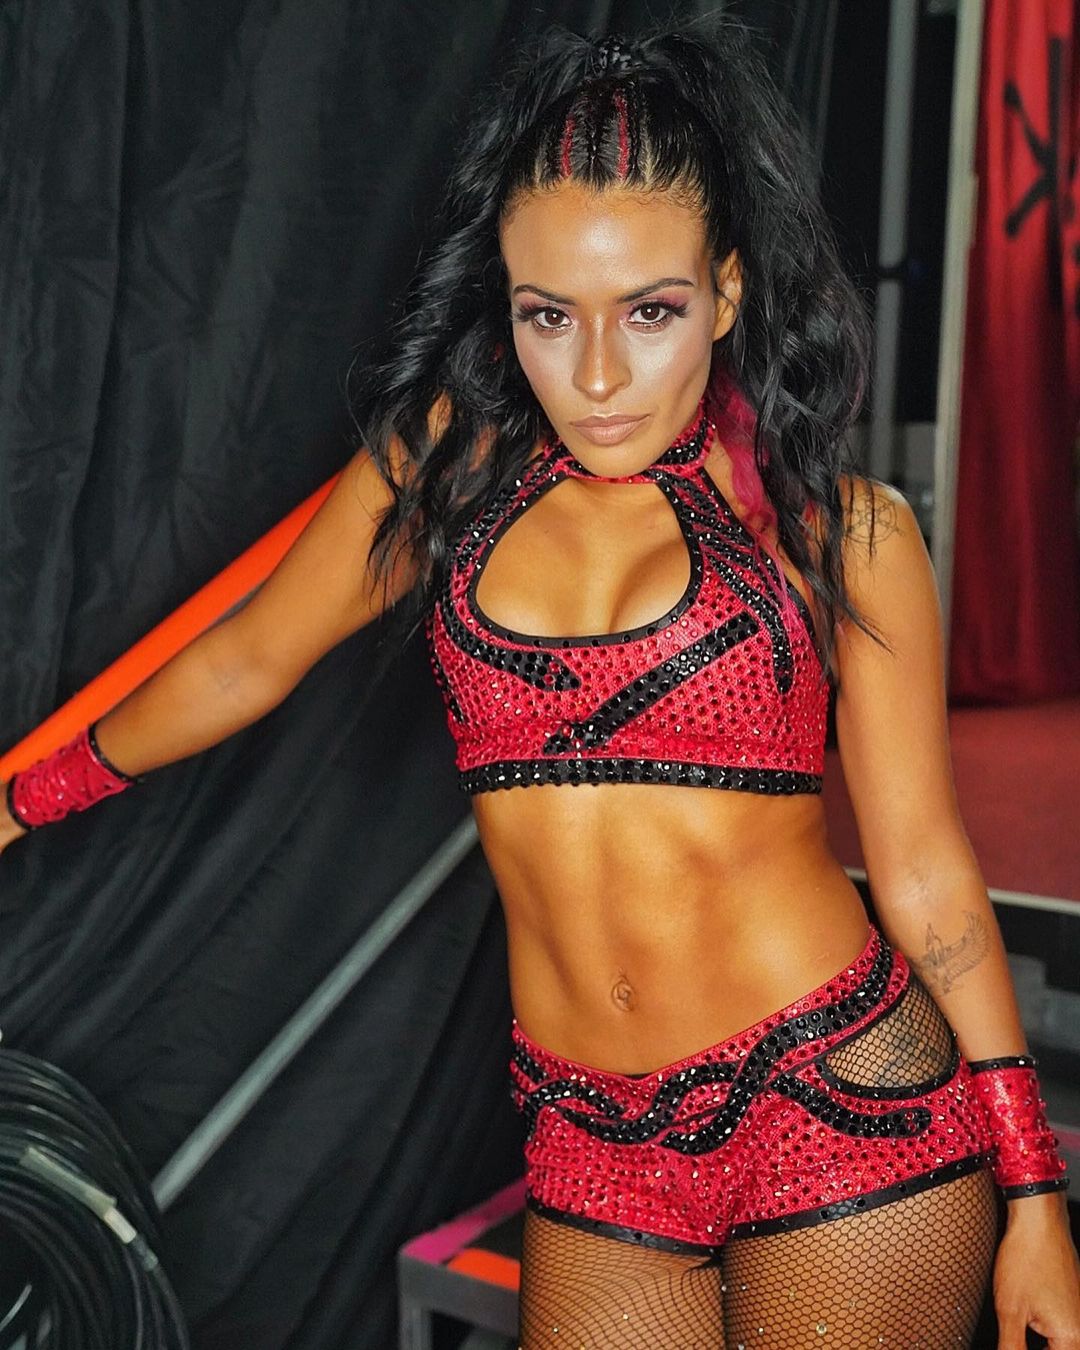 Vega onlyfans zelina WWE star